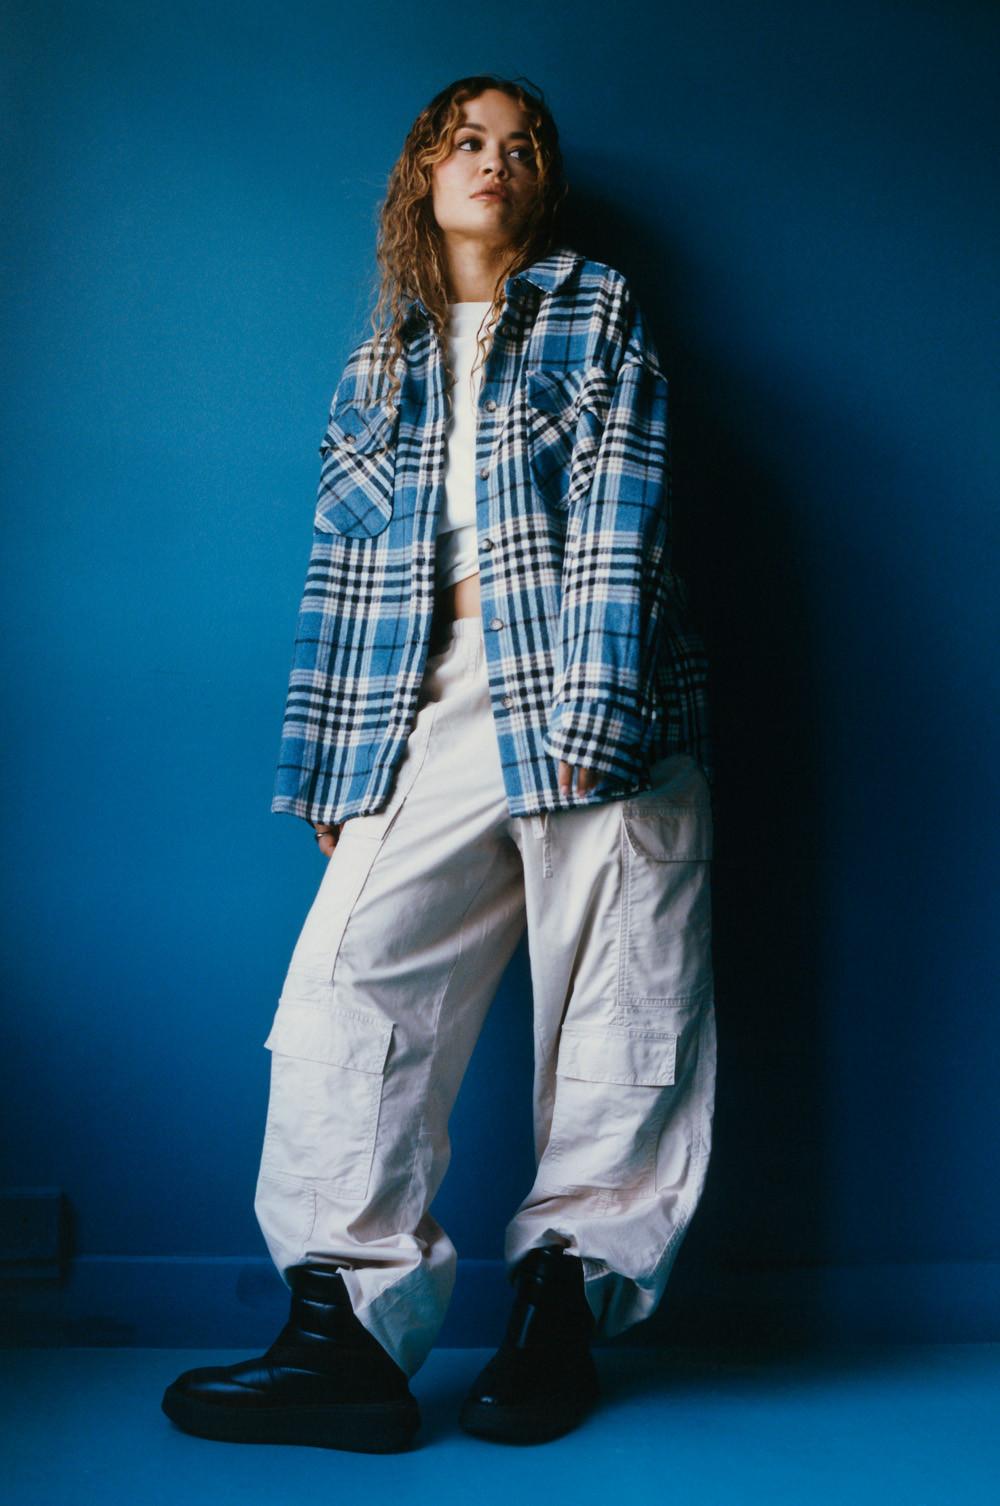 Model met grijze cargobroek, korte witte top en blauw geruite shacket